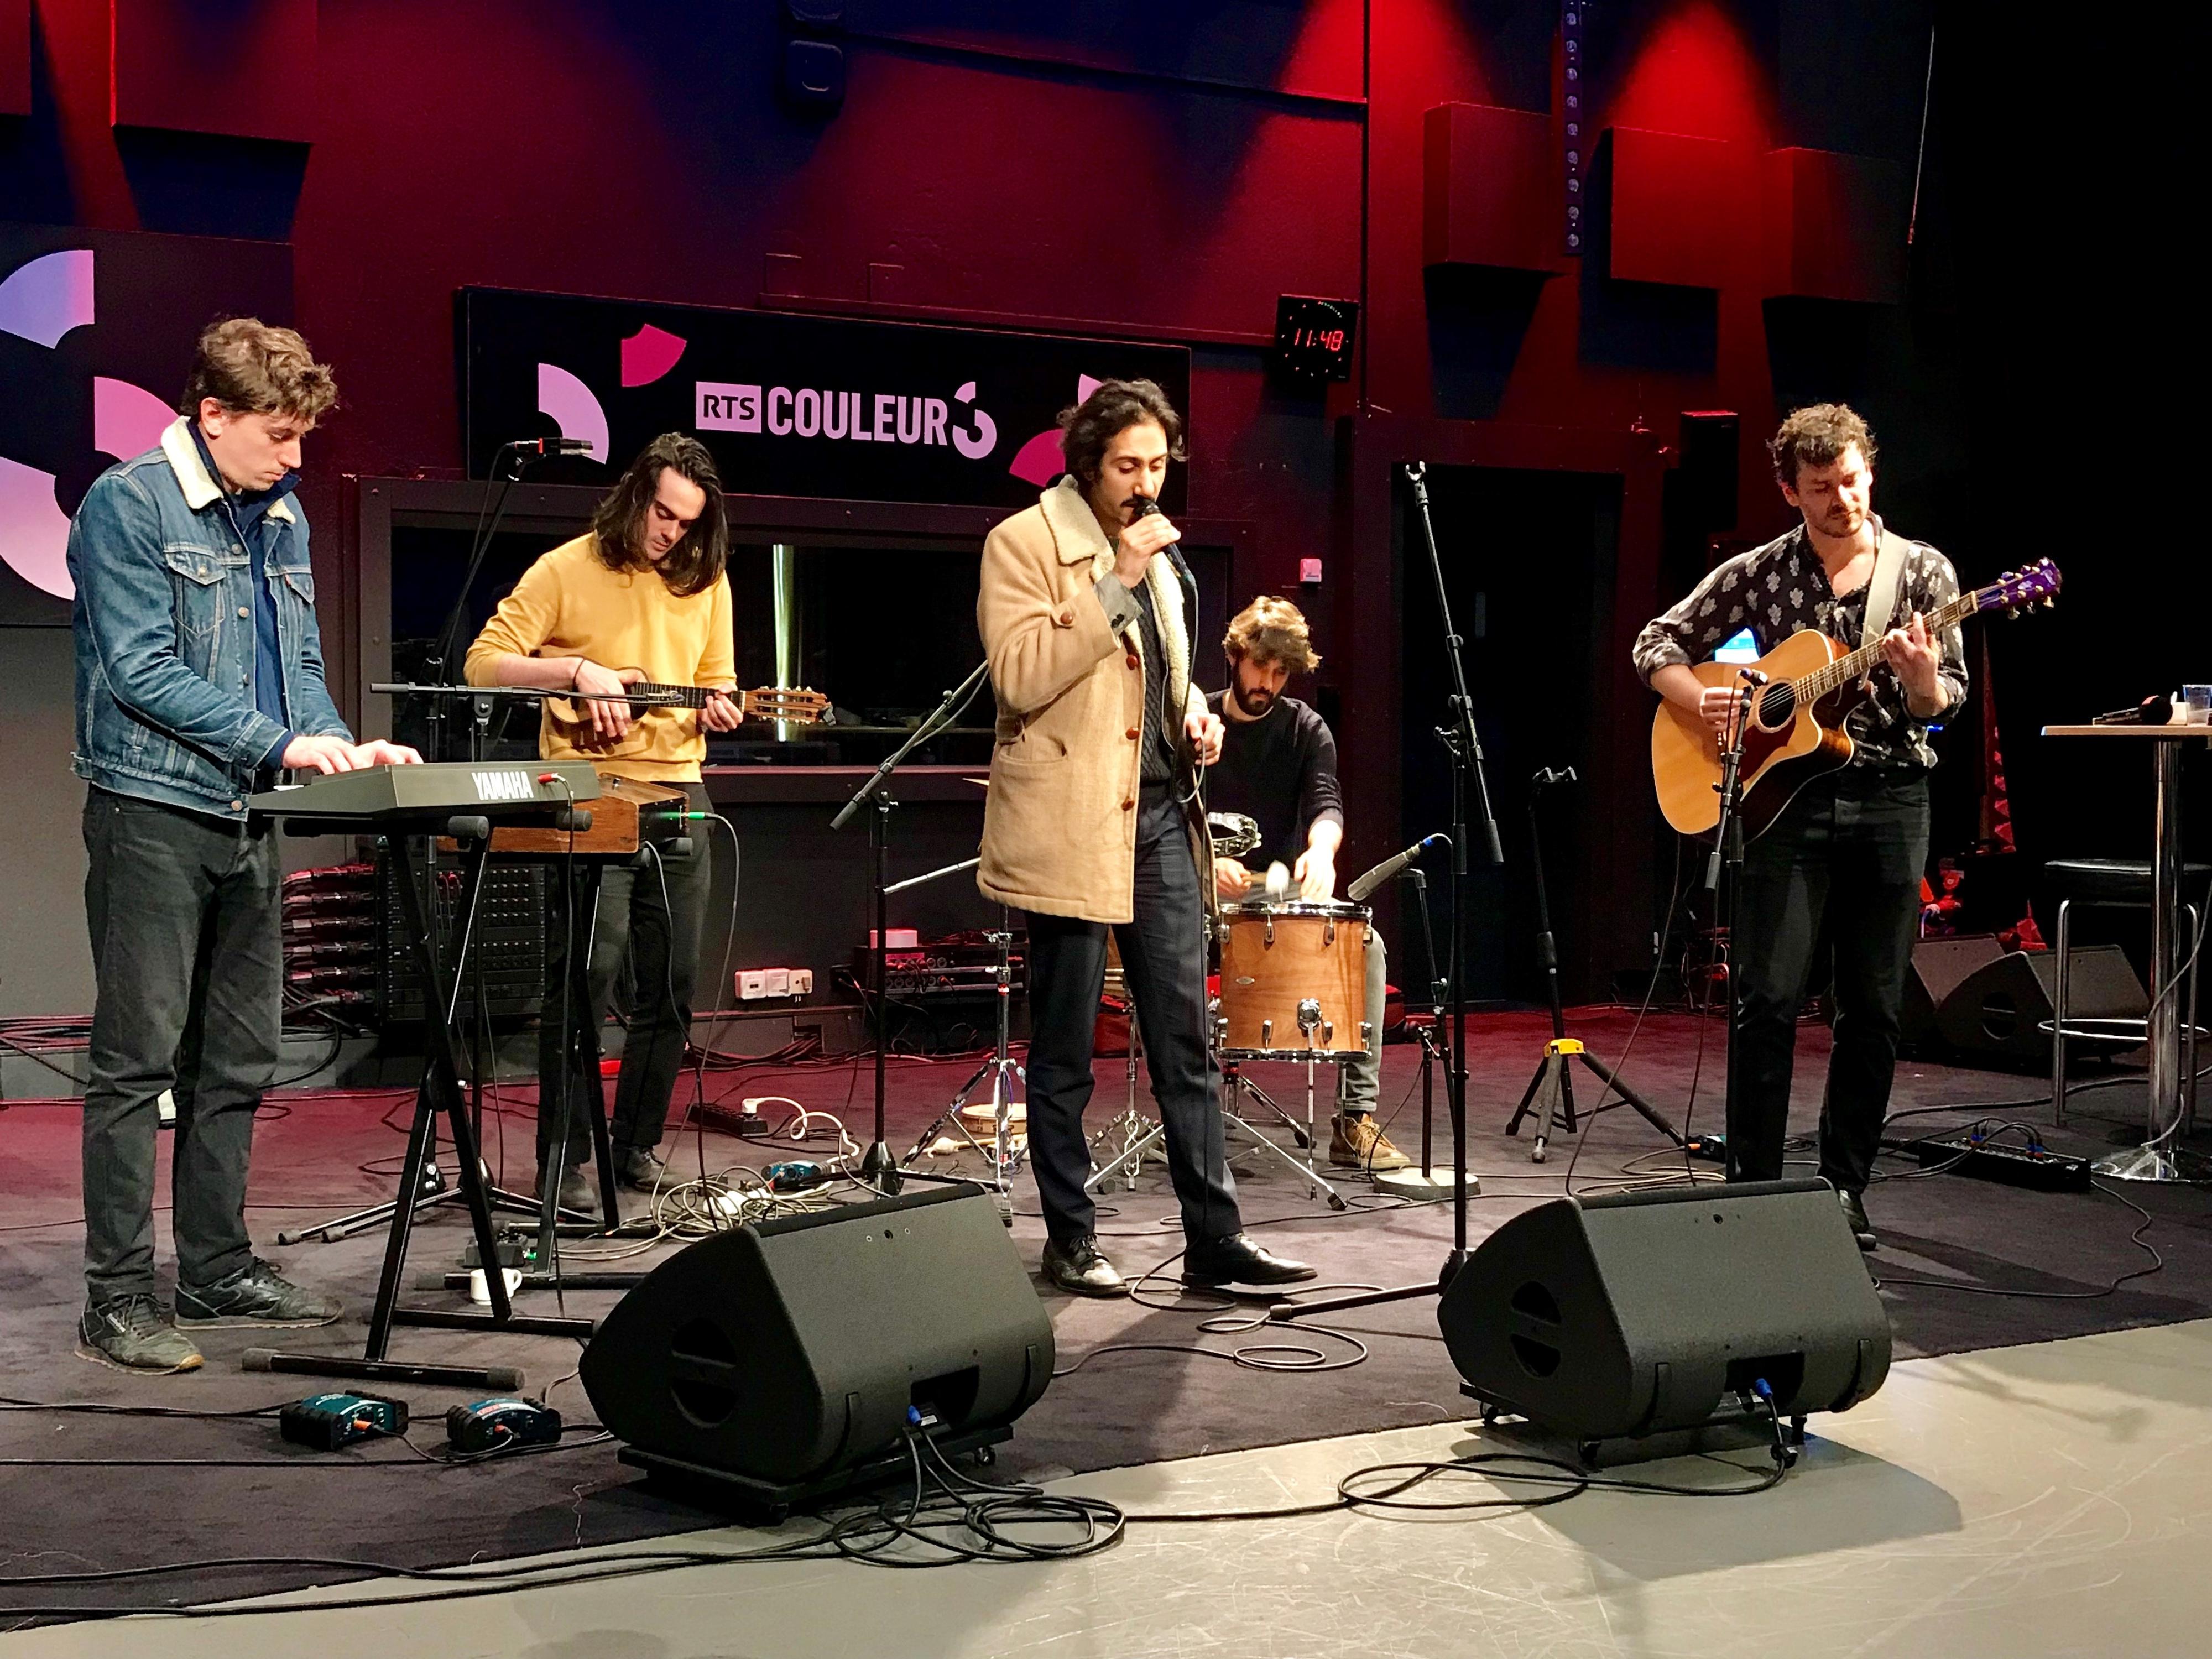 Le quintet français Feu! Chatterton en schowcase dans les locaux de Couleur 3 à Lausanne, le 3 avril 2018. [RTS - Marie-Dominique Schenk-Vallée]